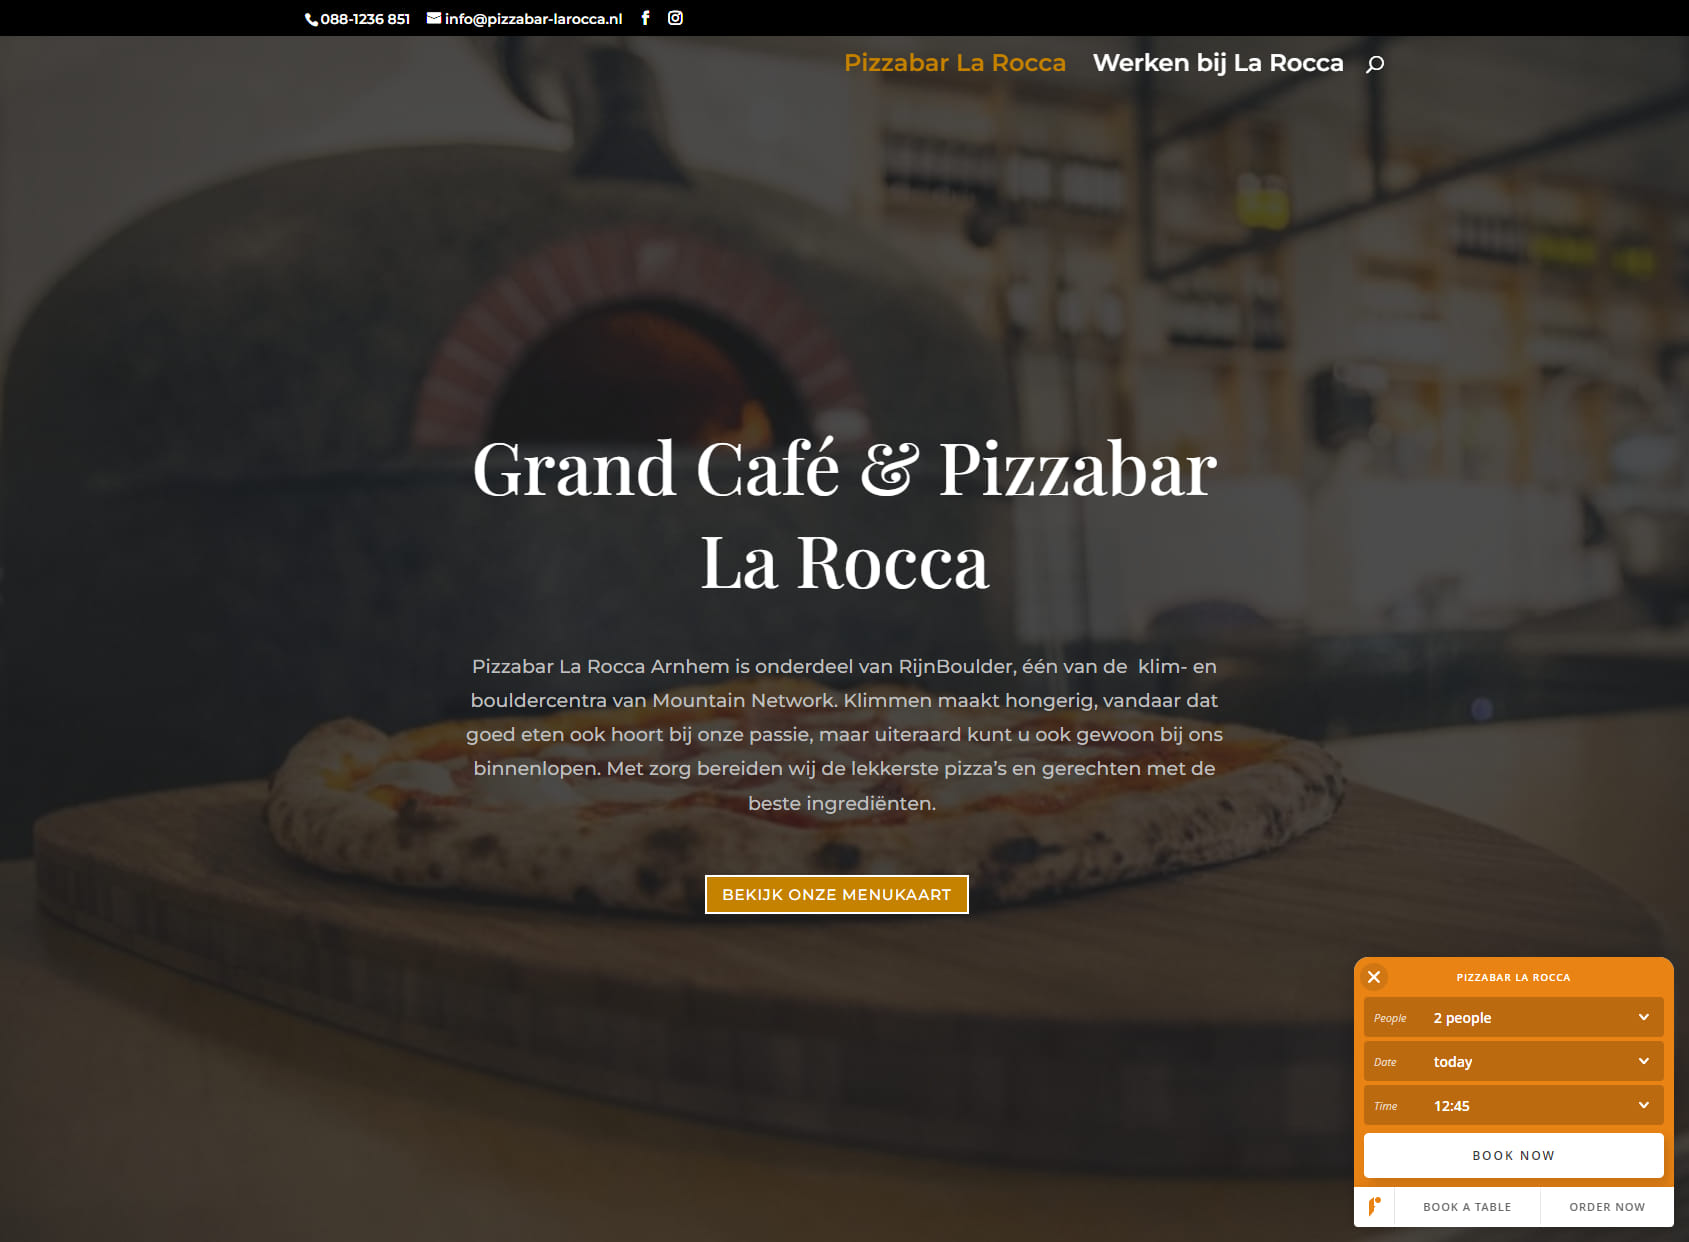 Grand Café + Pizzabar La Rocca